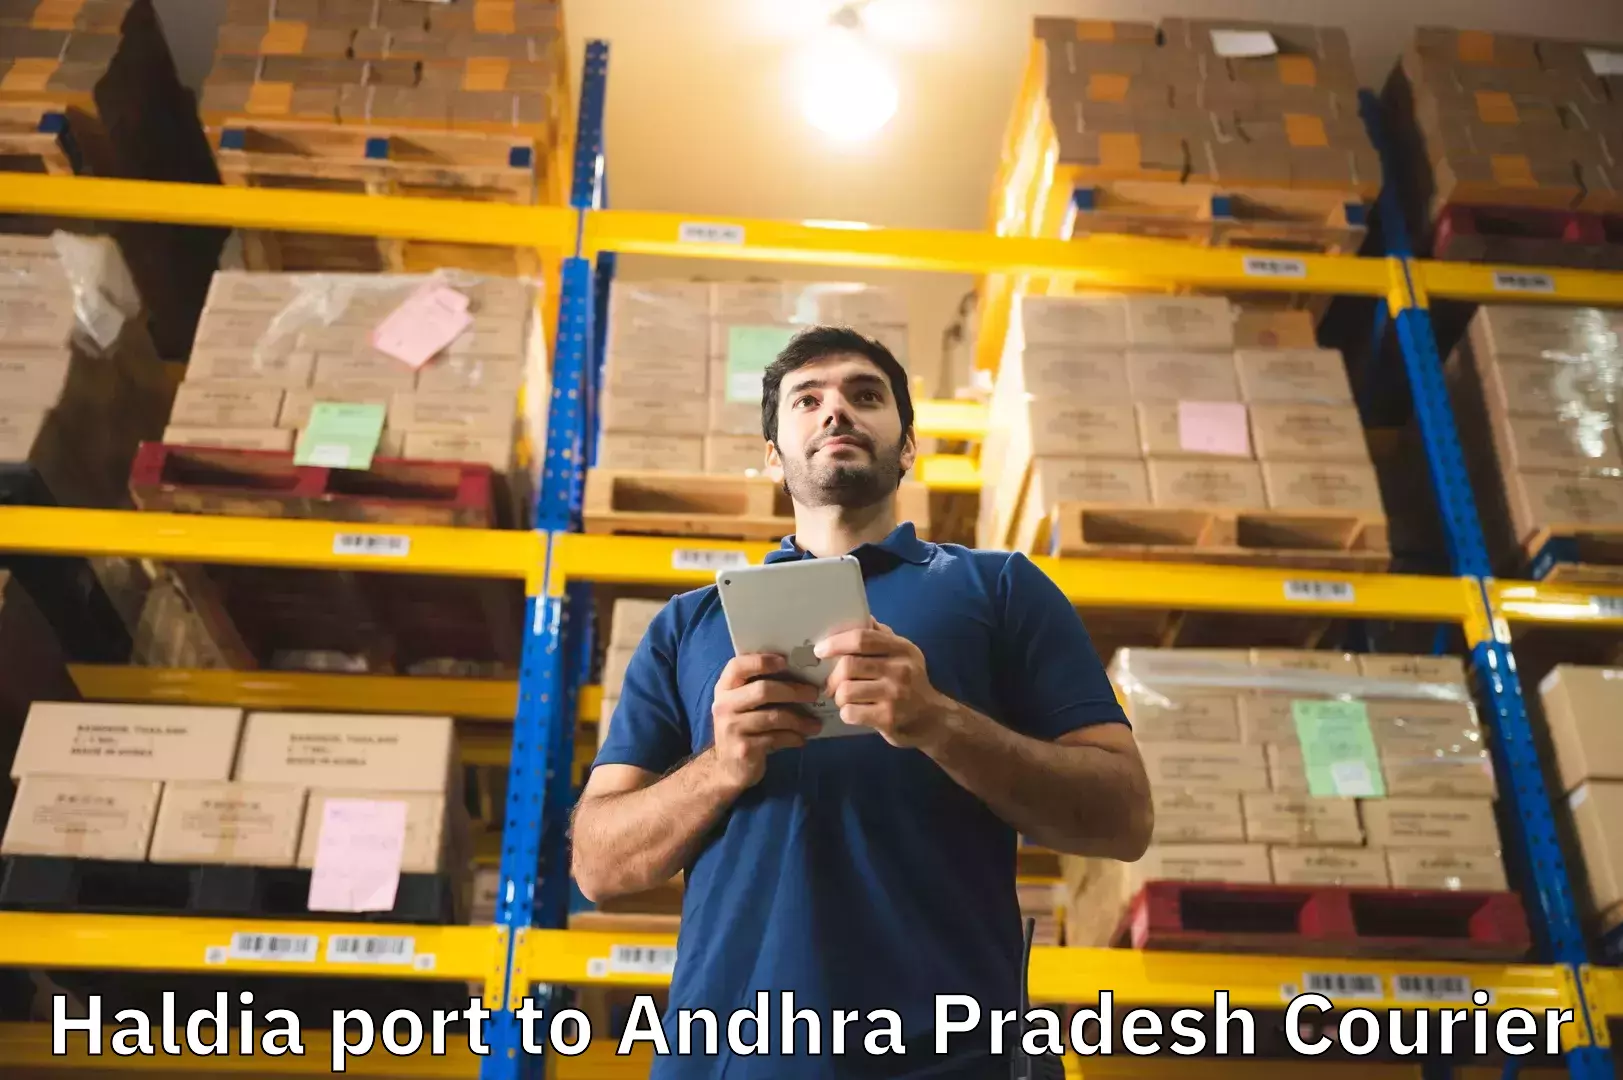 Baggage courier service Haldia port to Andhra Pradesh